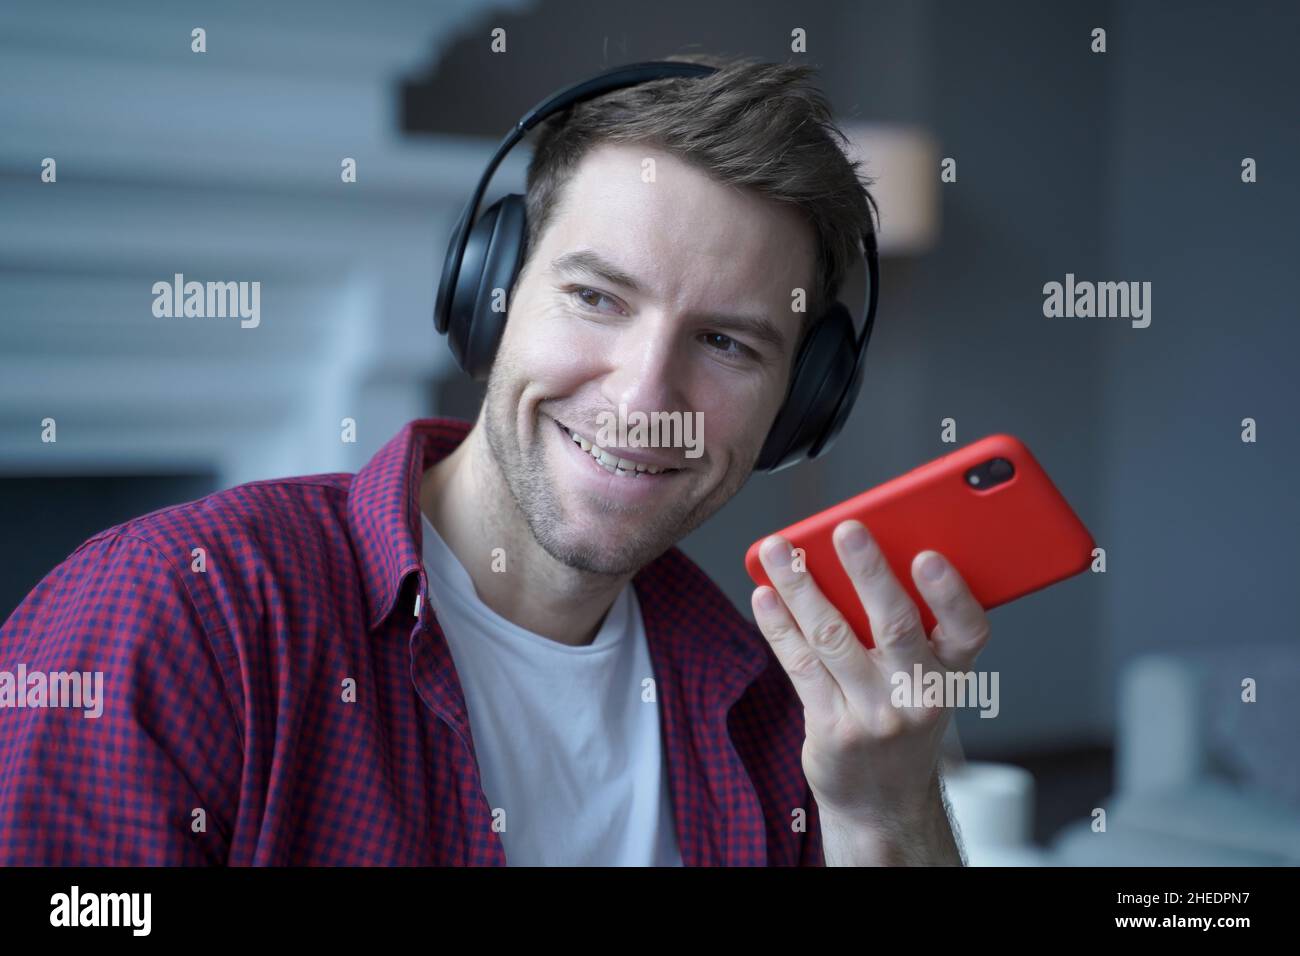 Jeune Allemand souriant dans un casque d'écoute enregistrant un message vocal pour collegue, à l'aide d'un haut-parleur Banque D'Images